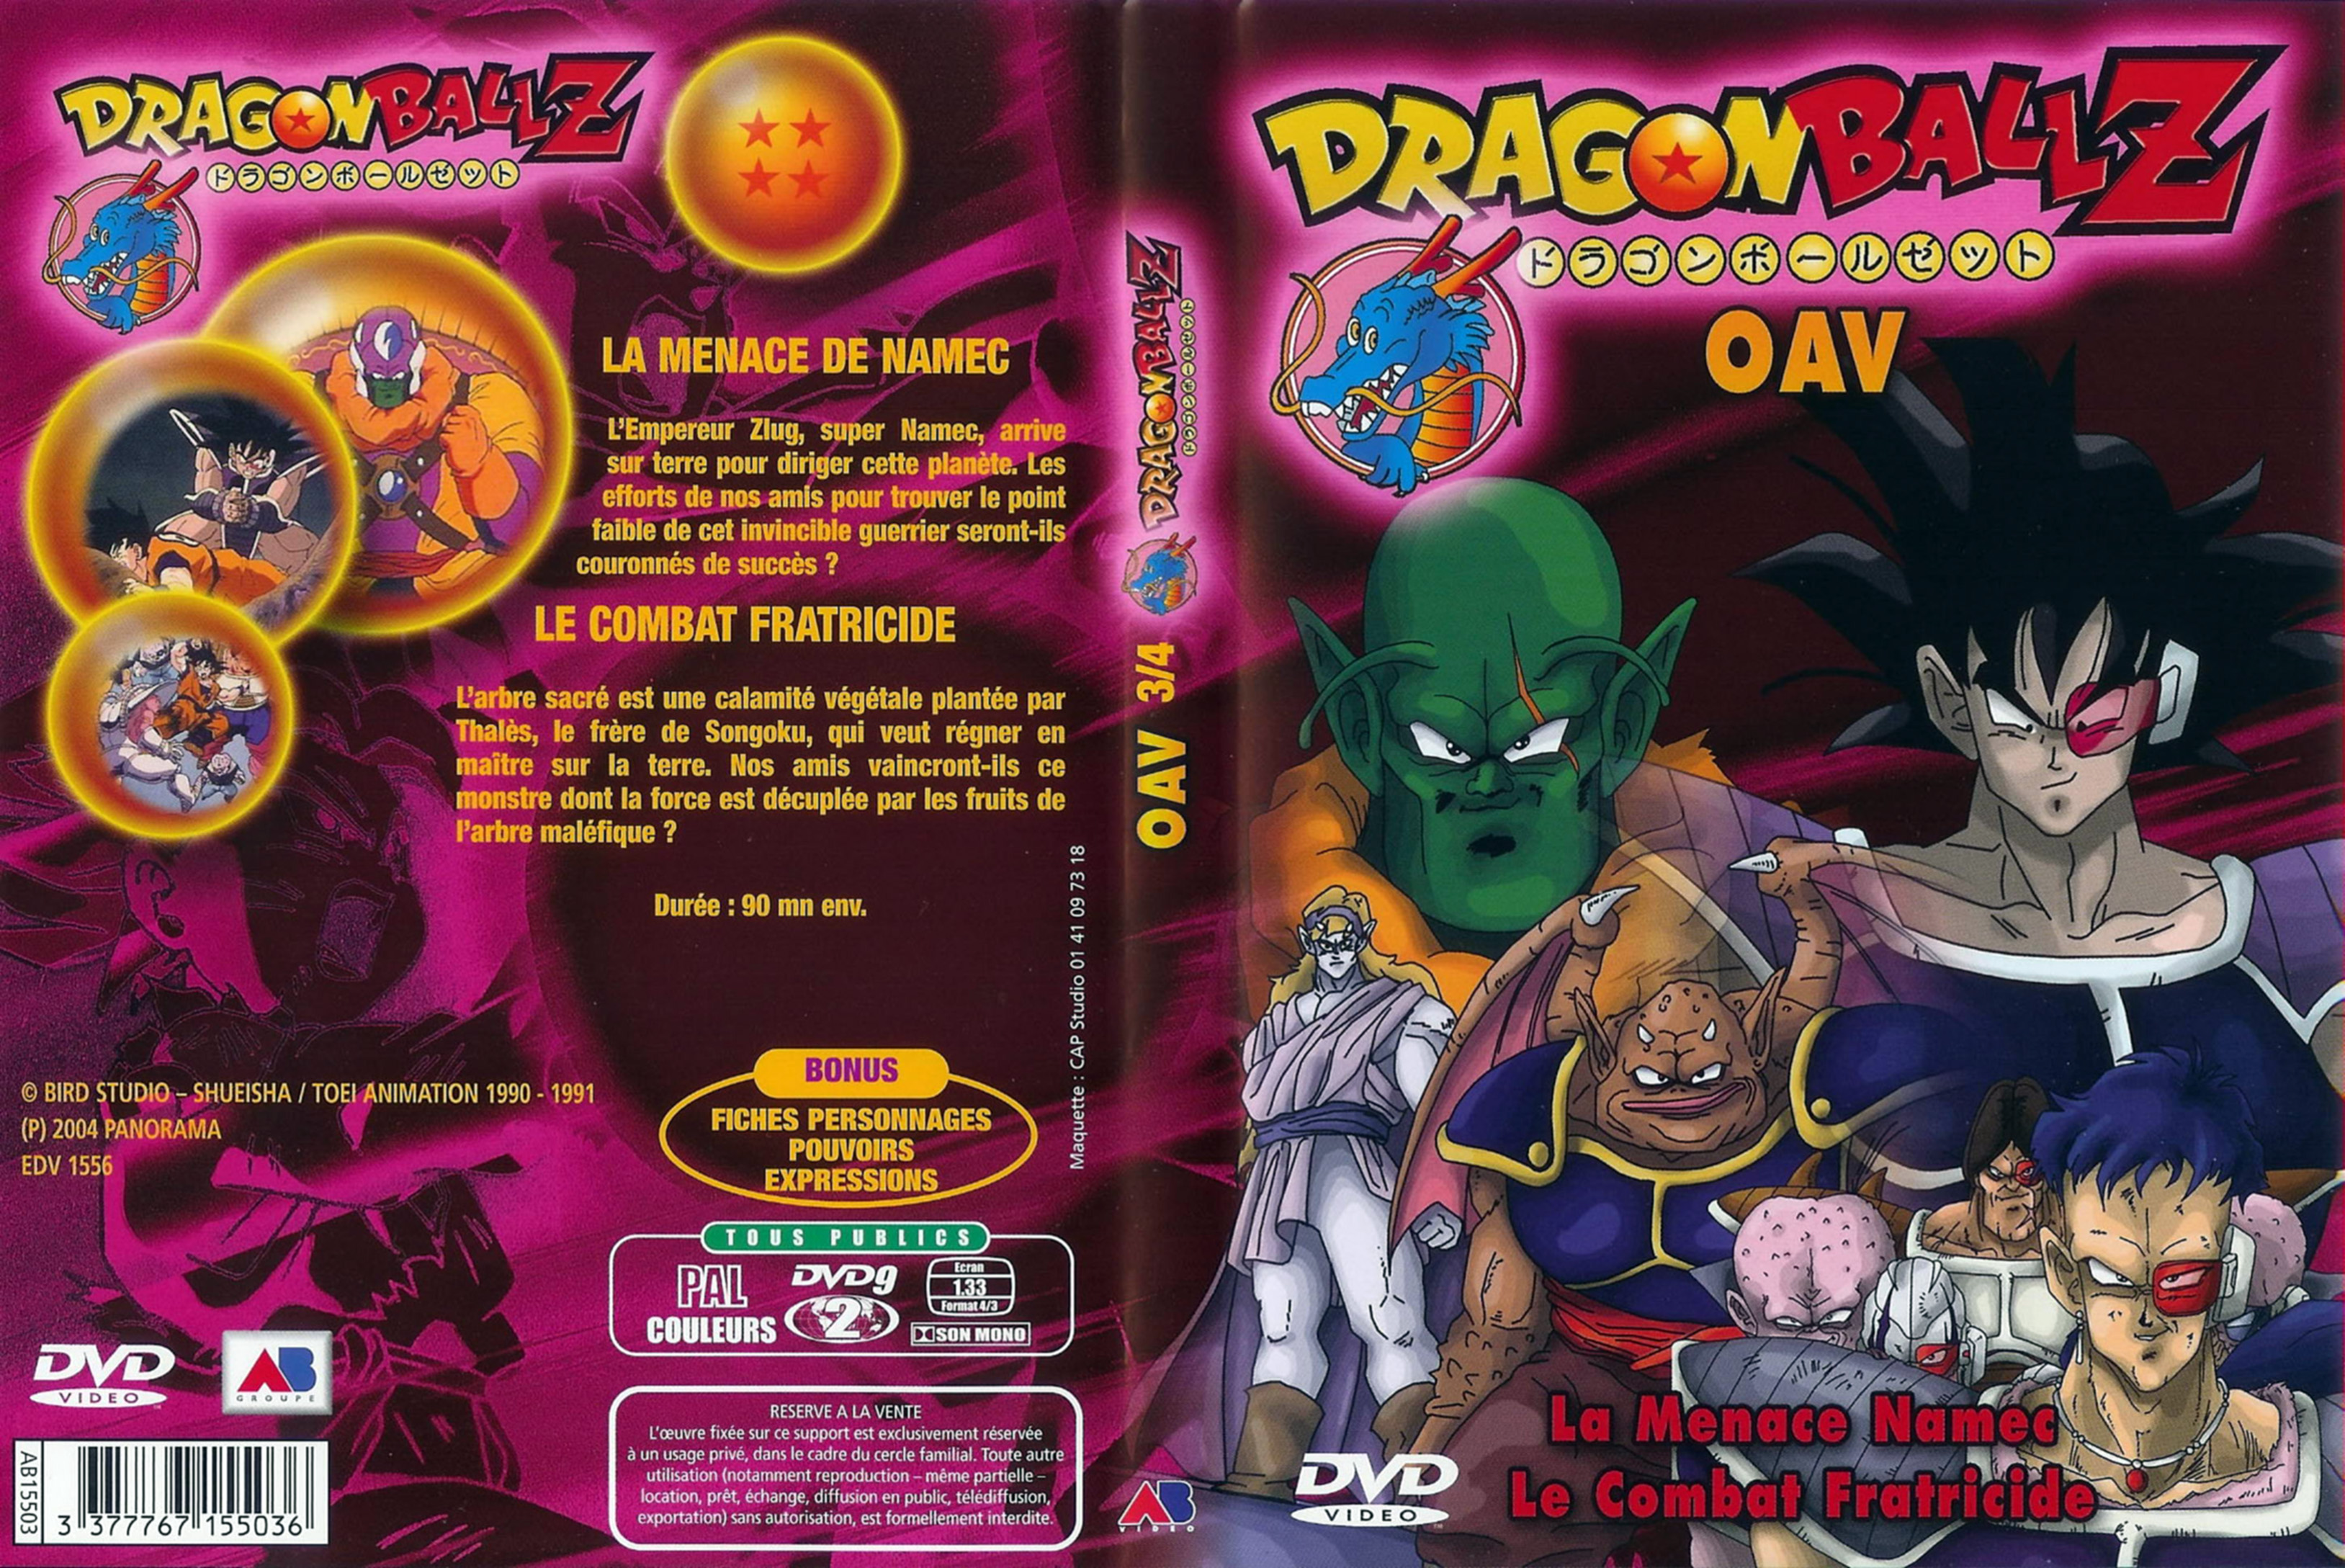 Jaquette DVD Dragon ball Z OAV 3-4 v2